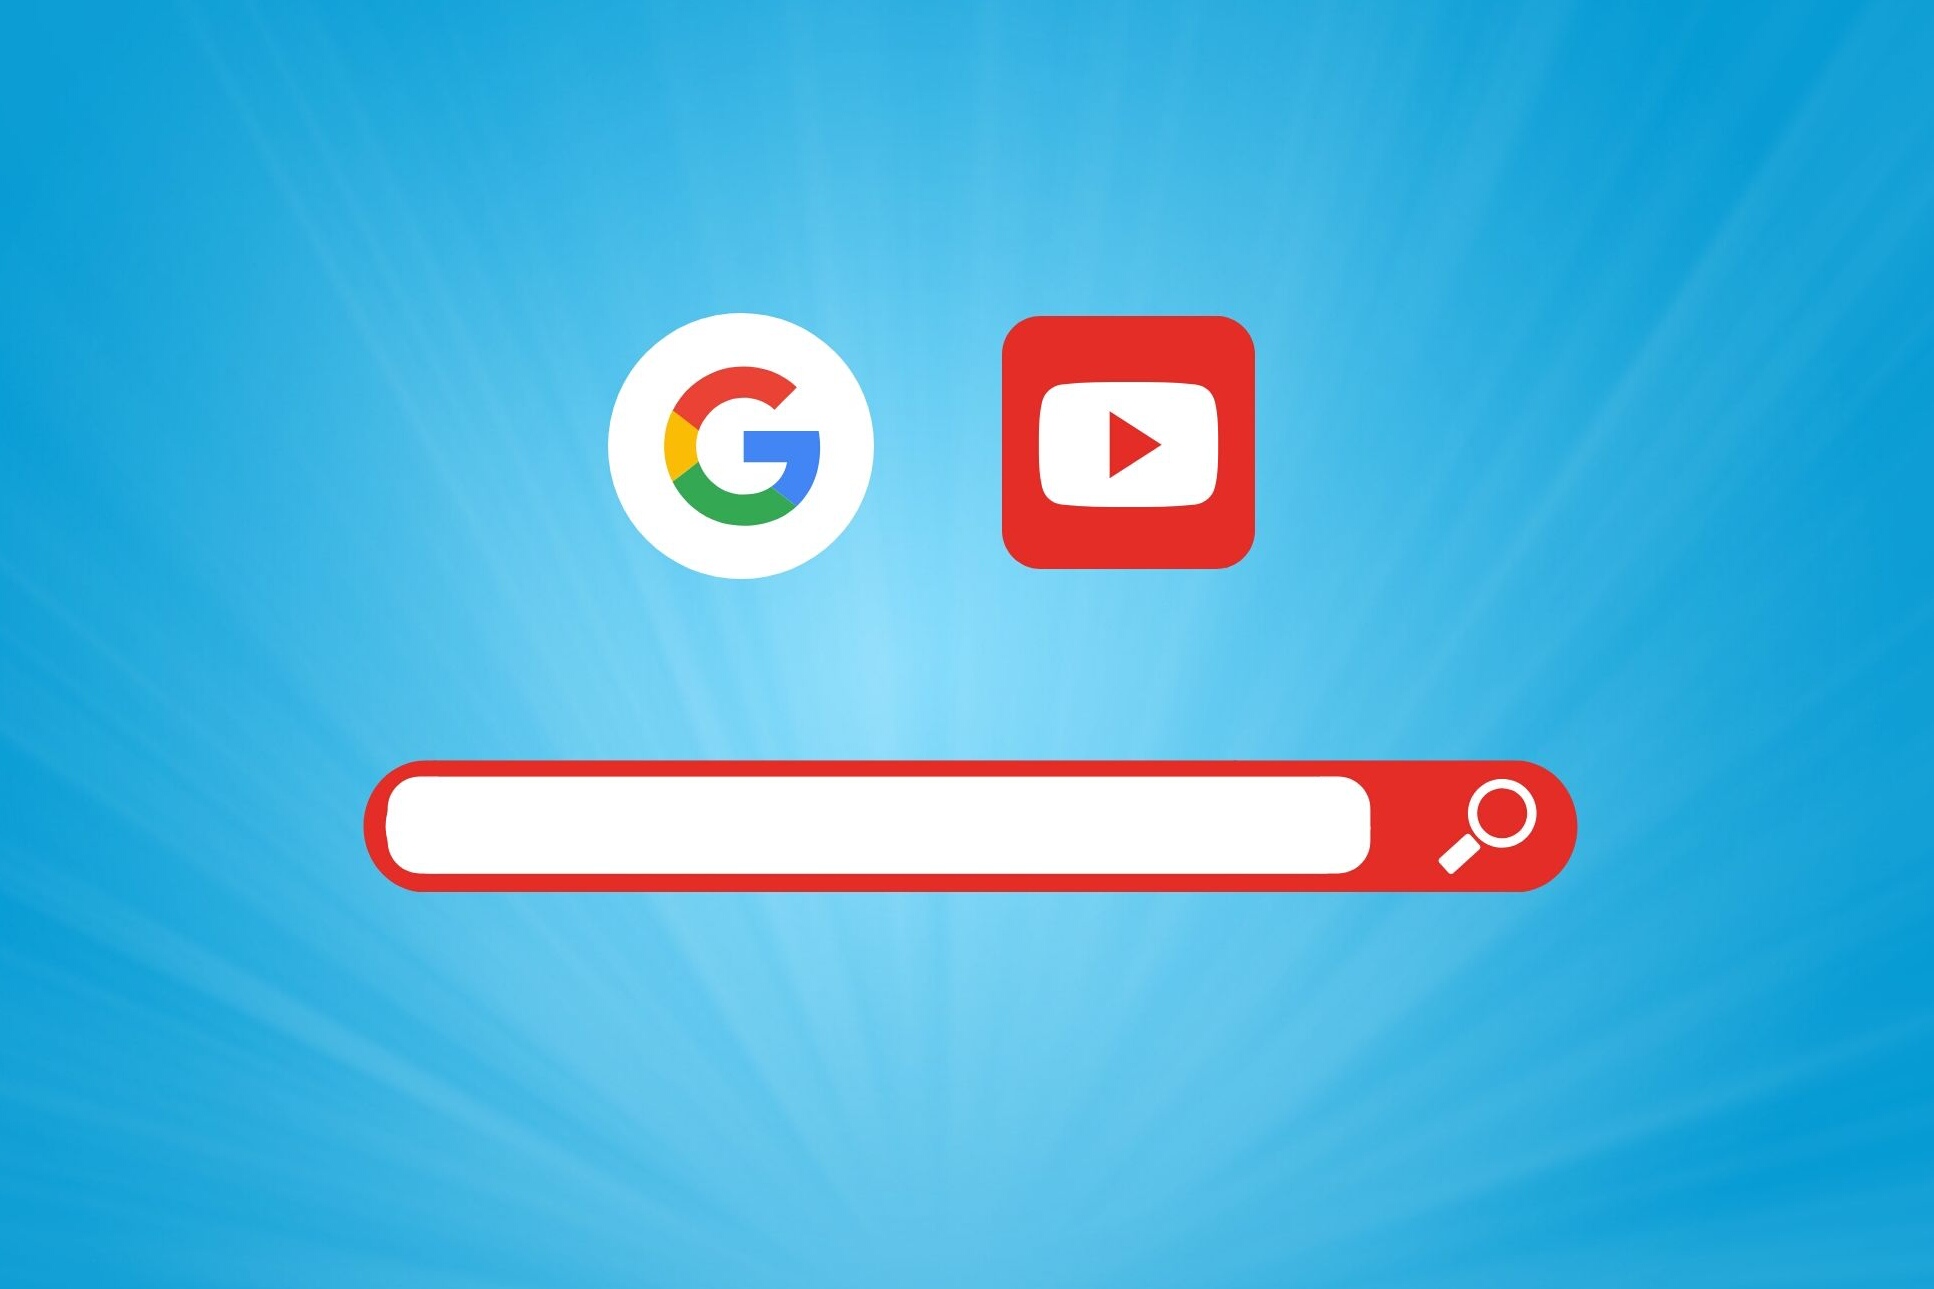  Tunisie : les requêtes les plus recherchées sur Google et YouTube en Novembre 2019